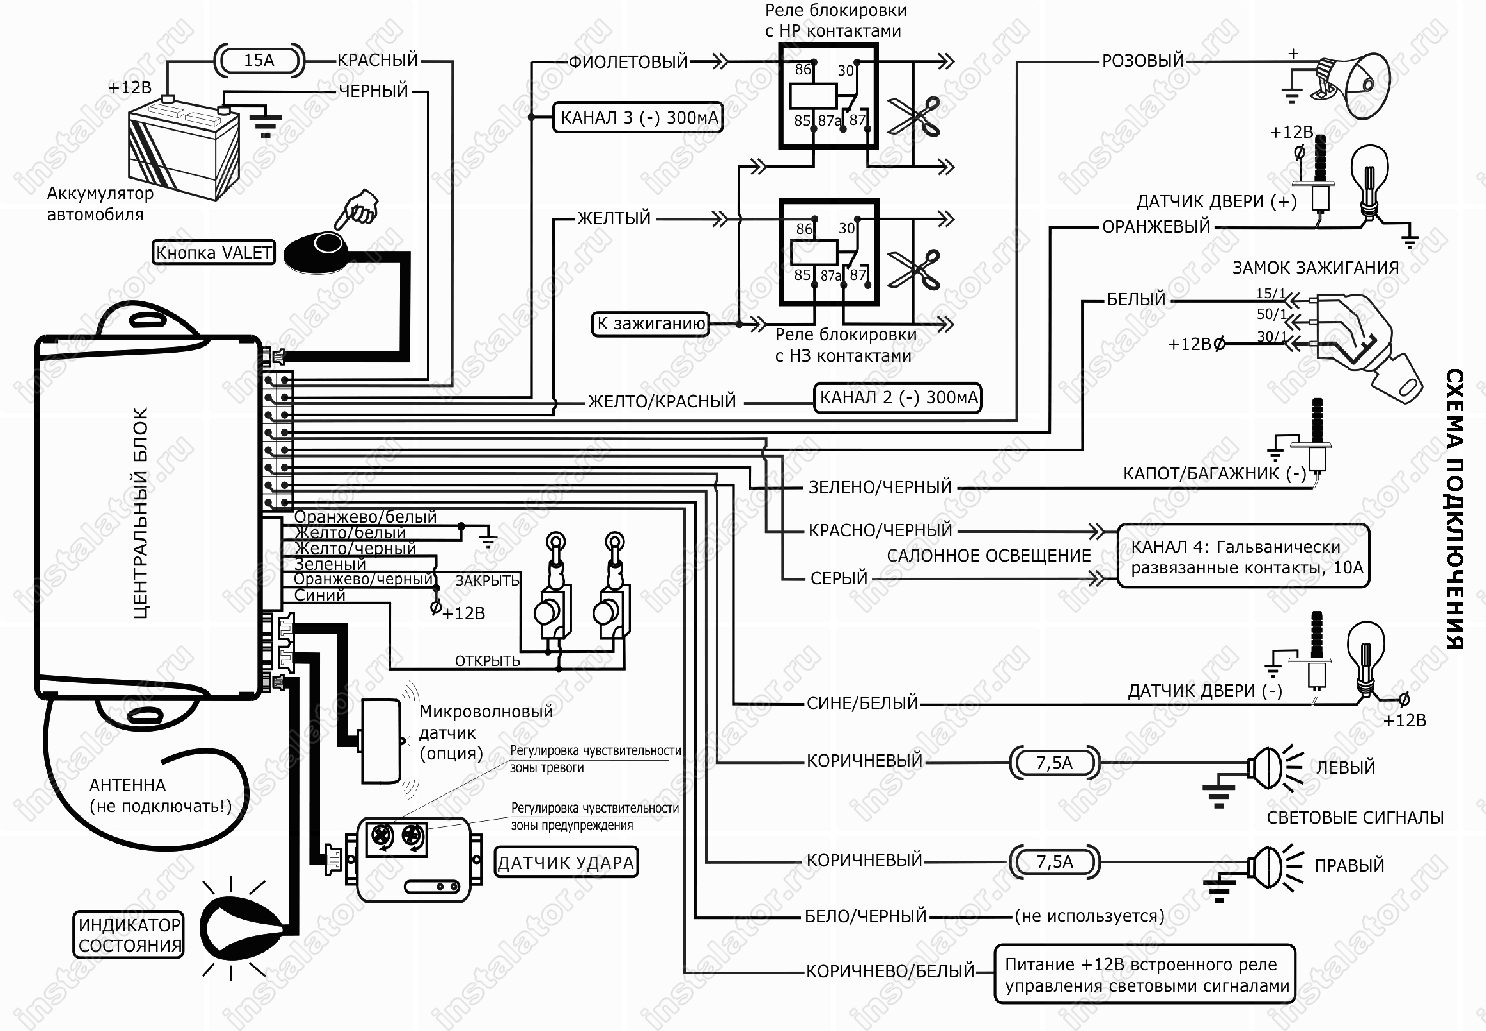 Сигнализация davinci 🔊 : самая полная характеристики моделей, ❗ инструкции по установки и эксплуатации (скачать pdf), схема подключения и отзывы об автосигнализации